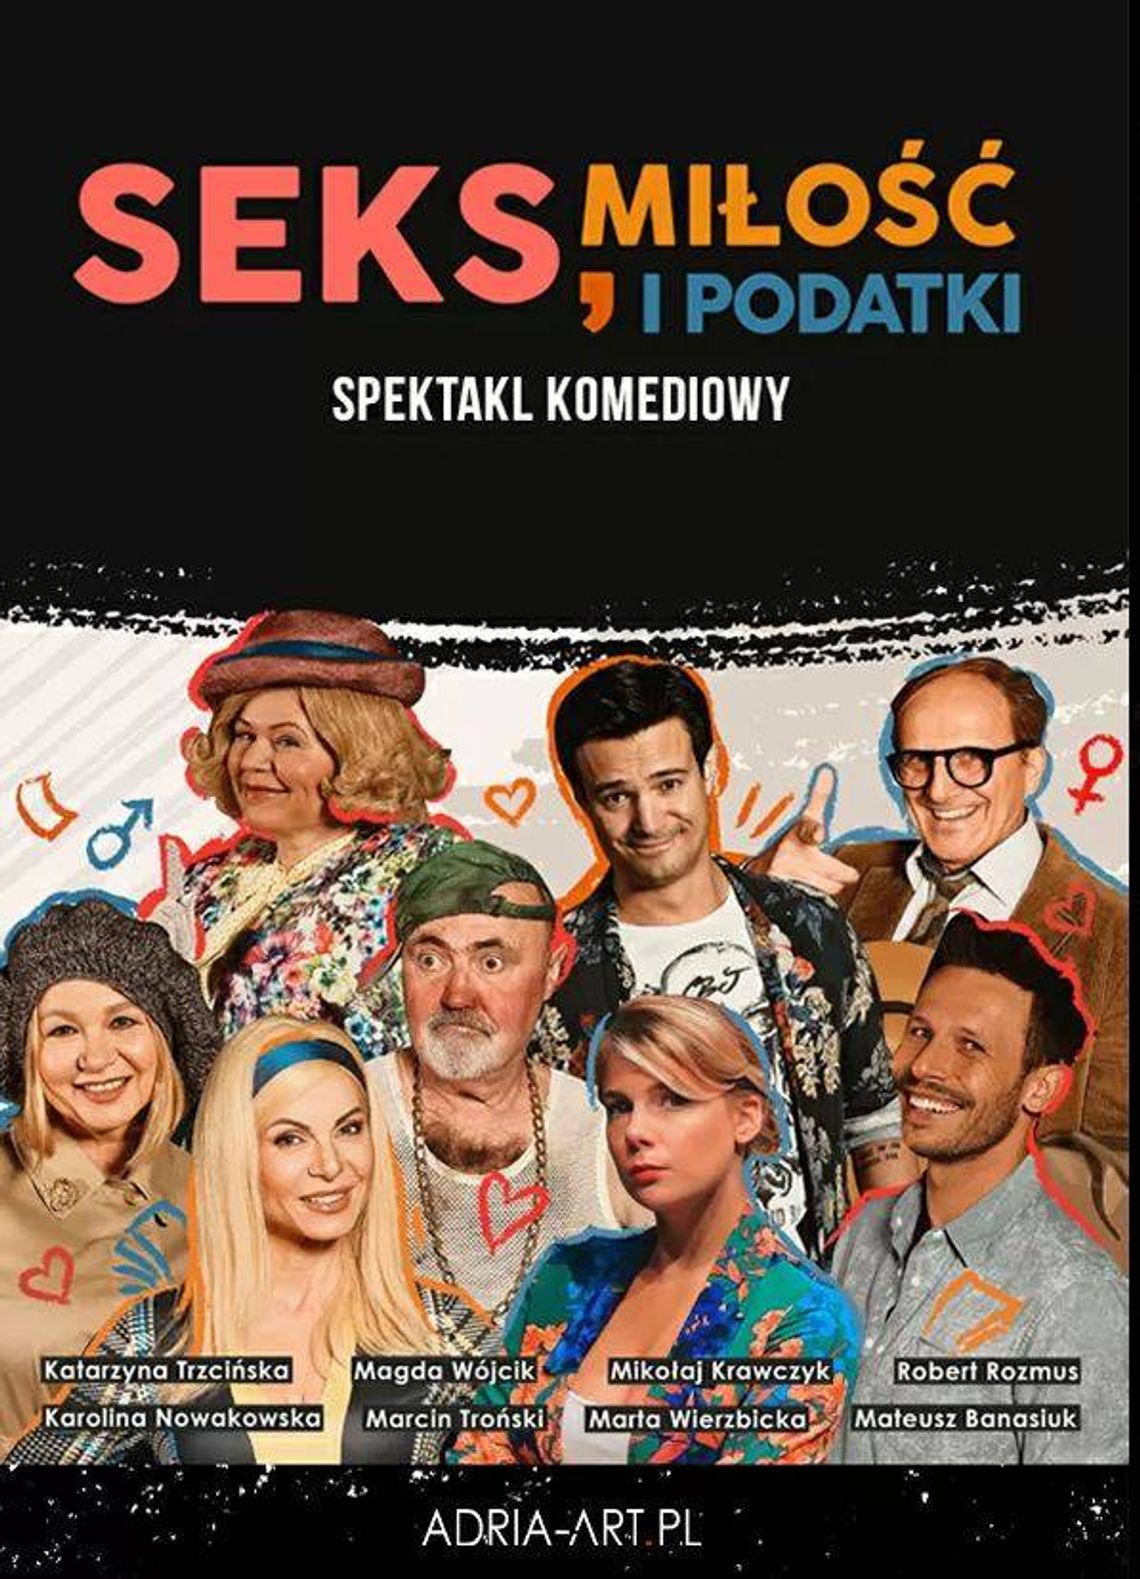 Seks, miłość i podatki w Filharmonii Pomorskiej!